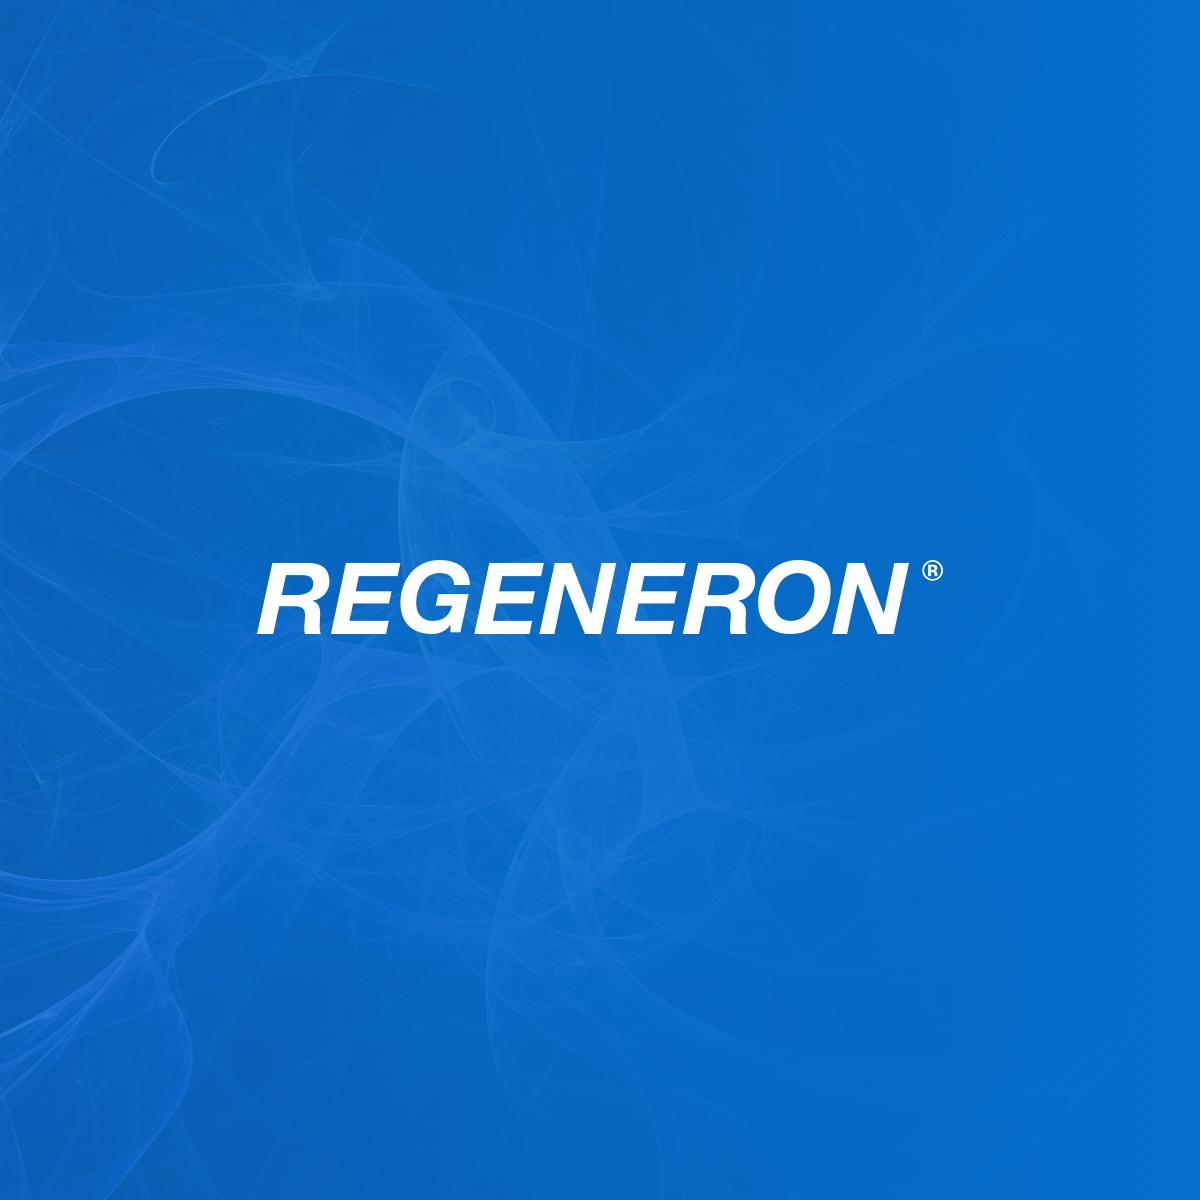 Regeneron Pharmaceuticals, Inc.